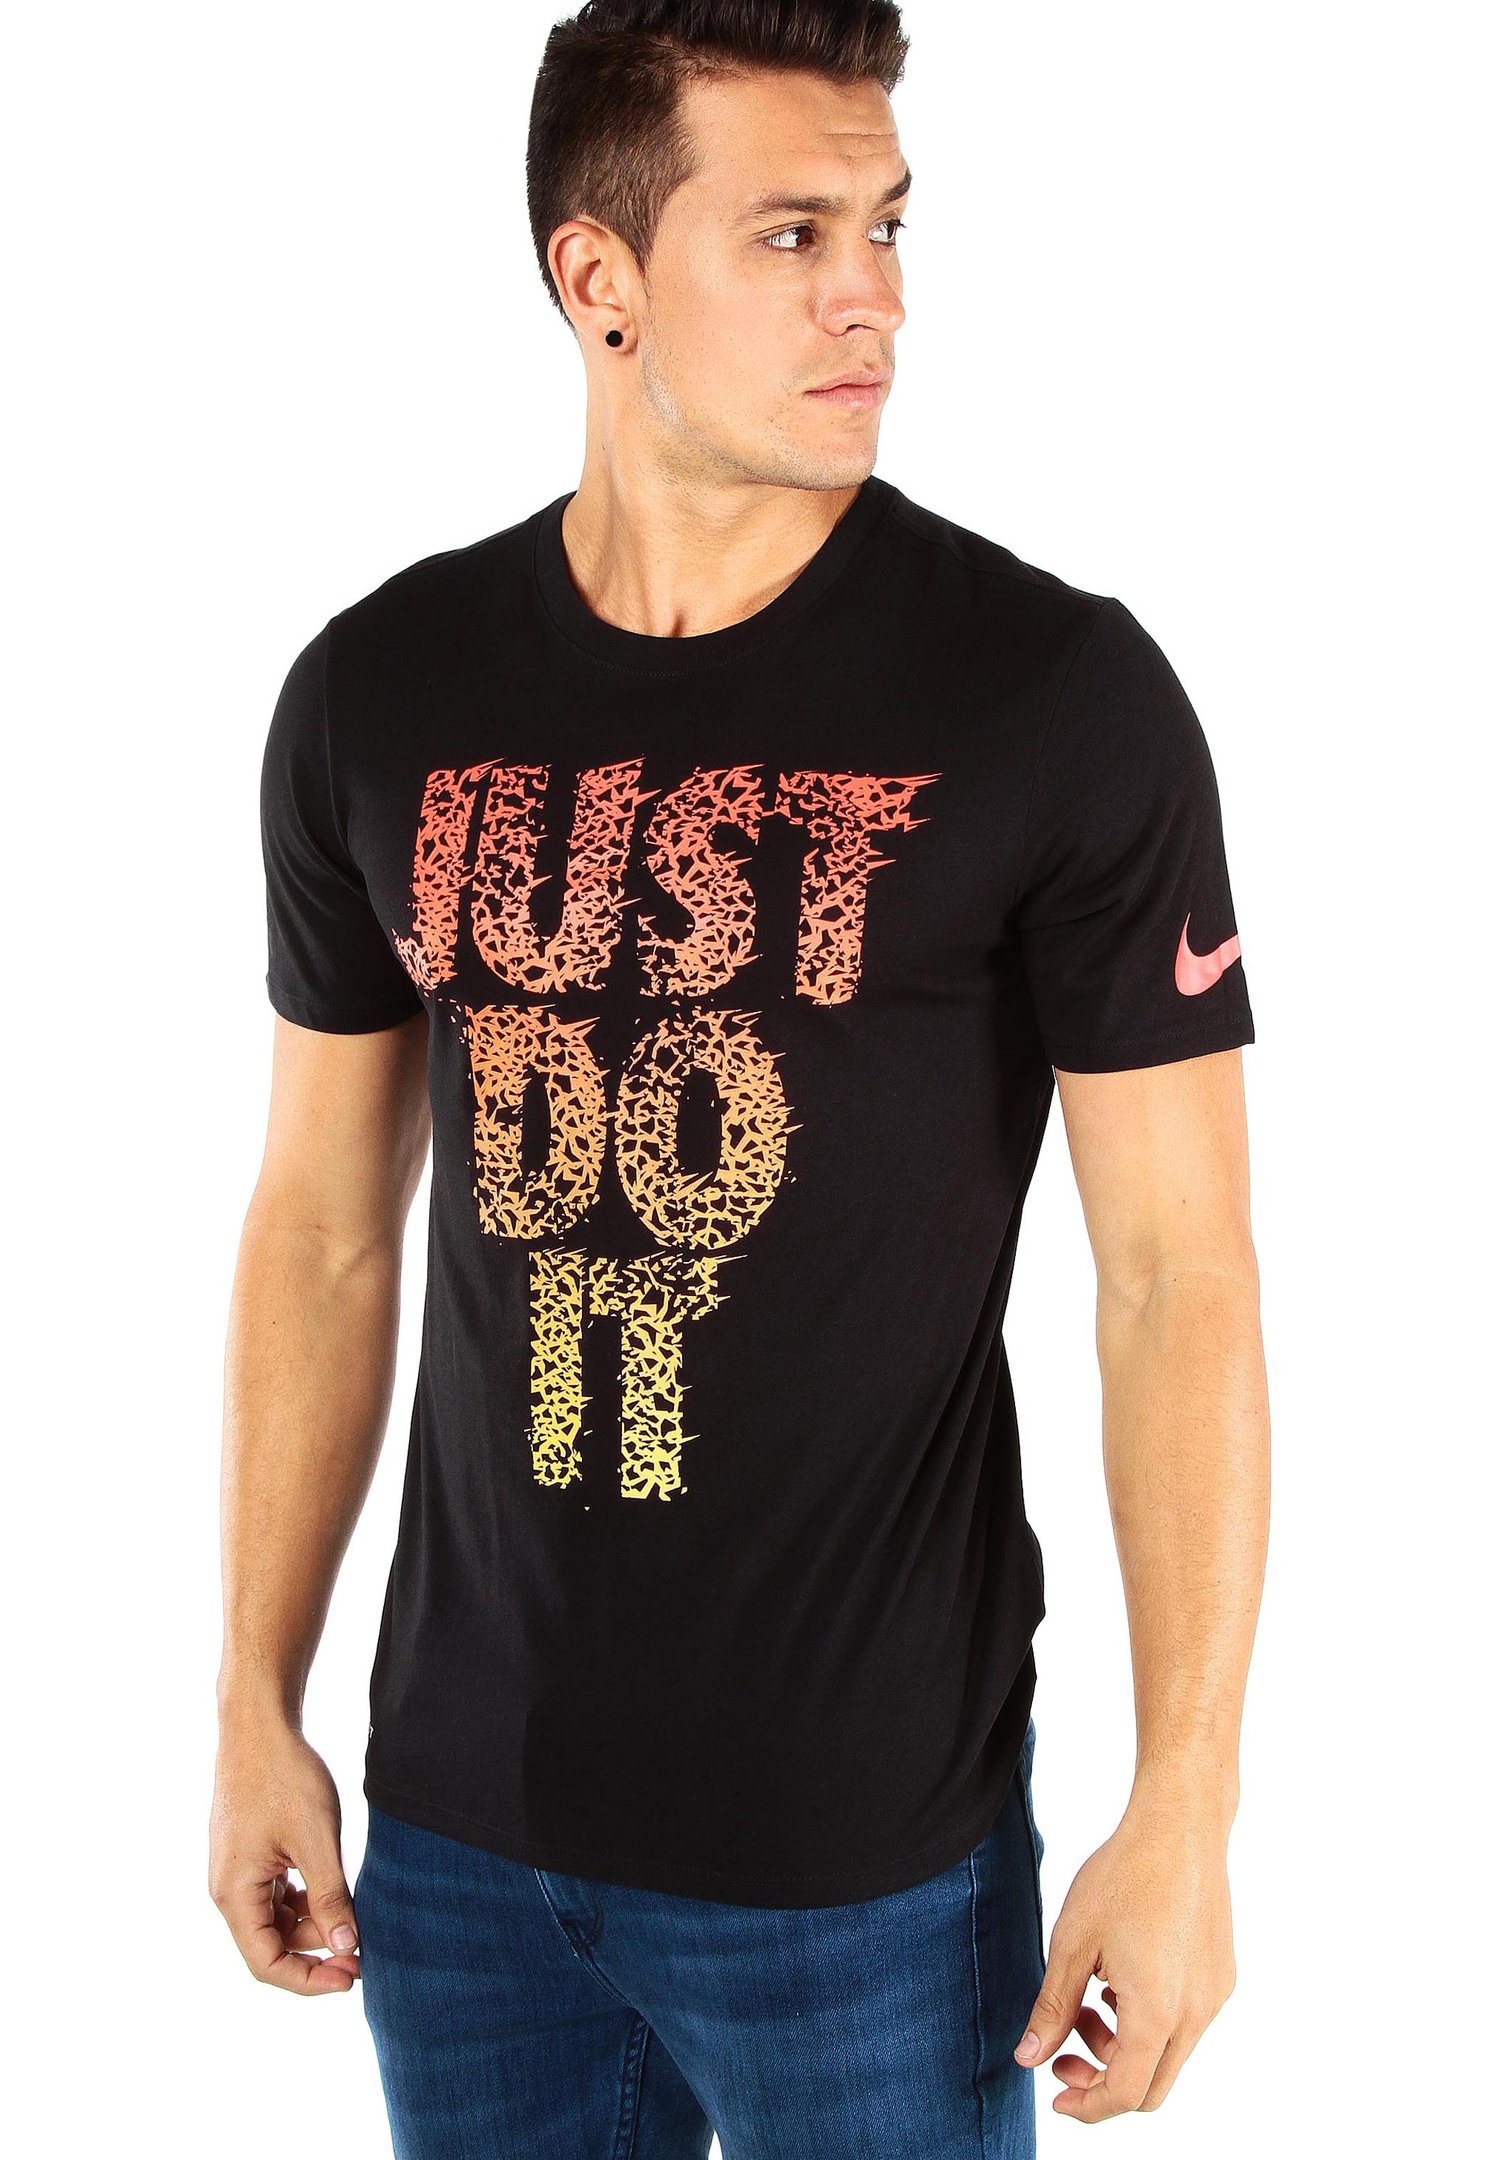 tifón población Incompatible Camisetas Nike Dafiti Deals, GET 51% OFF, www.mdpublishing.com